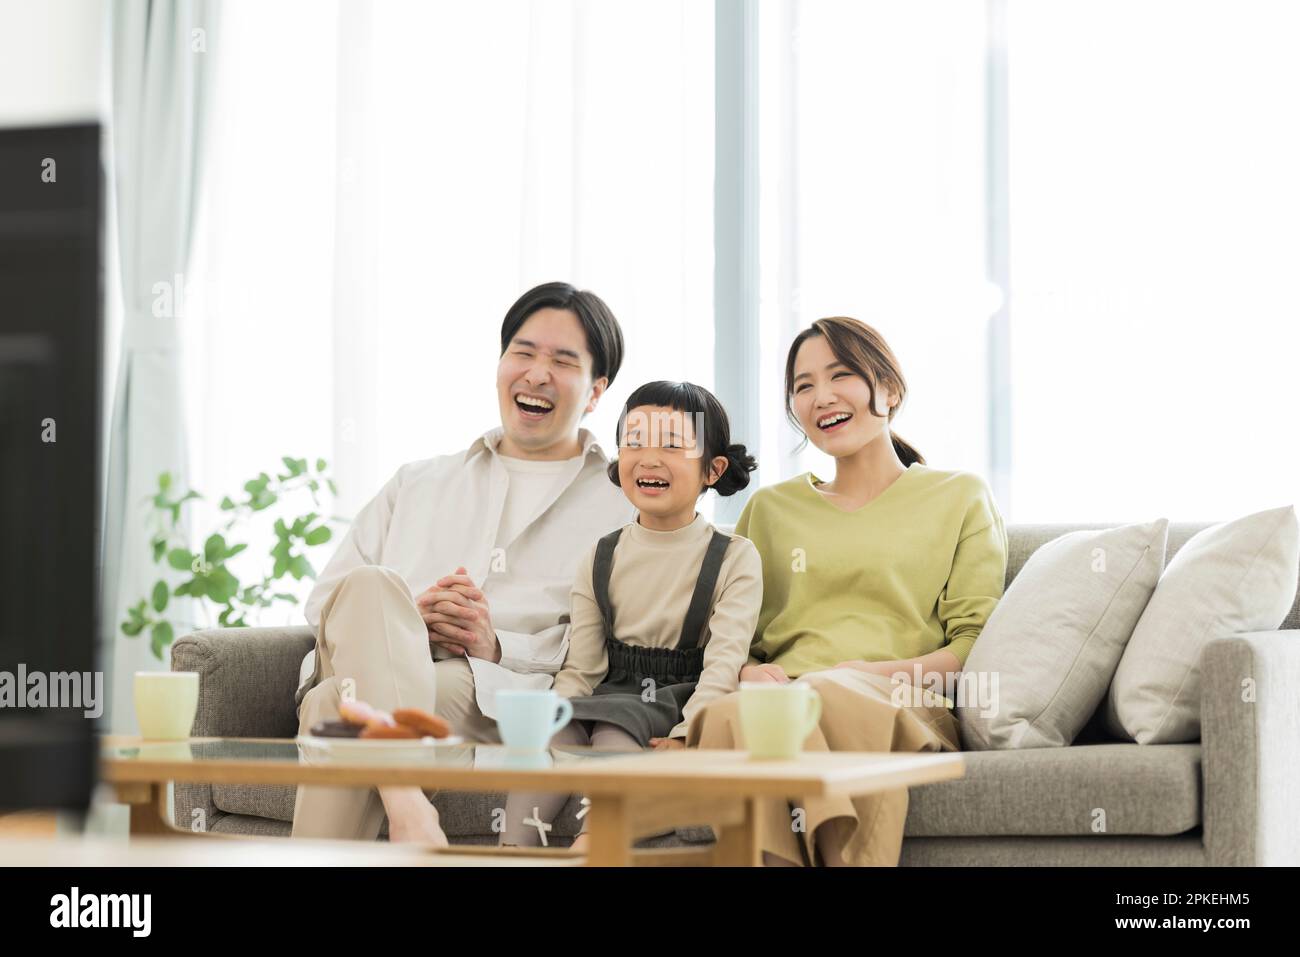 Family watching TV Stock Photo